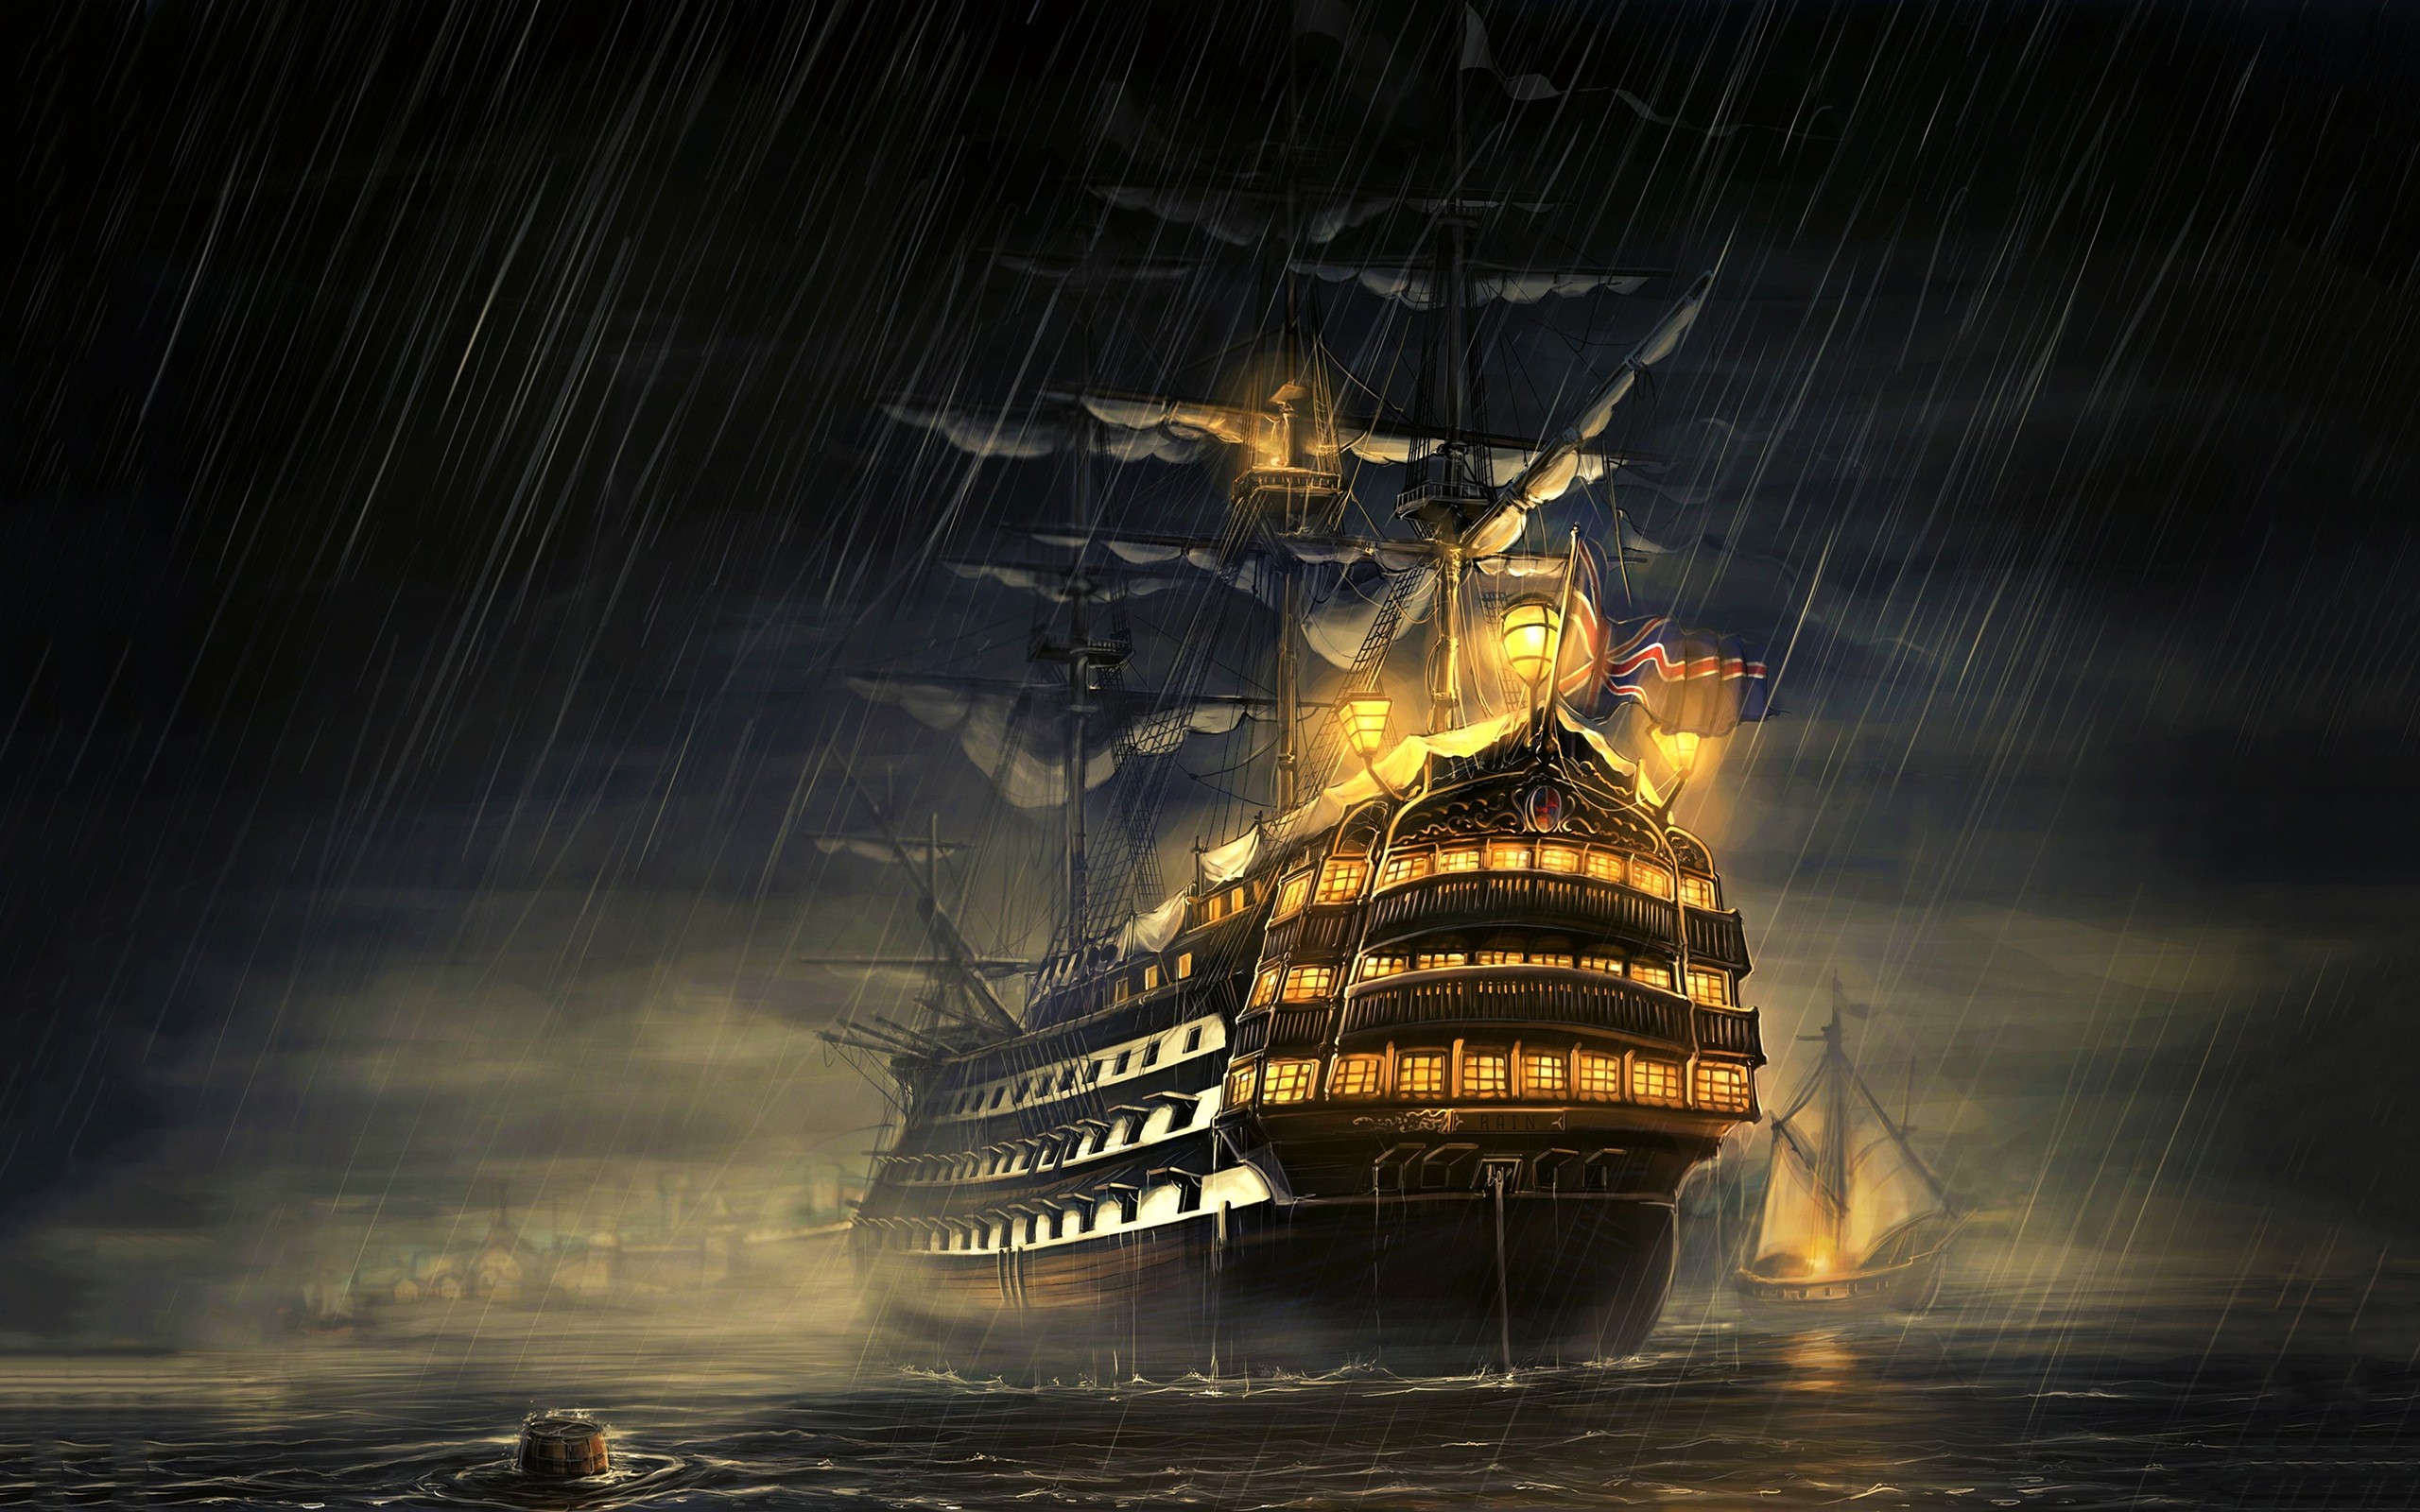 General 2560x1600 ship navy Royal Navy sailing ship rain water artwork Man-of-war rigging (ship) vehicle old ship